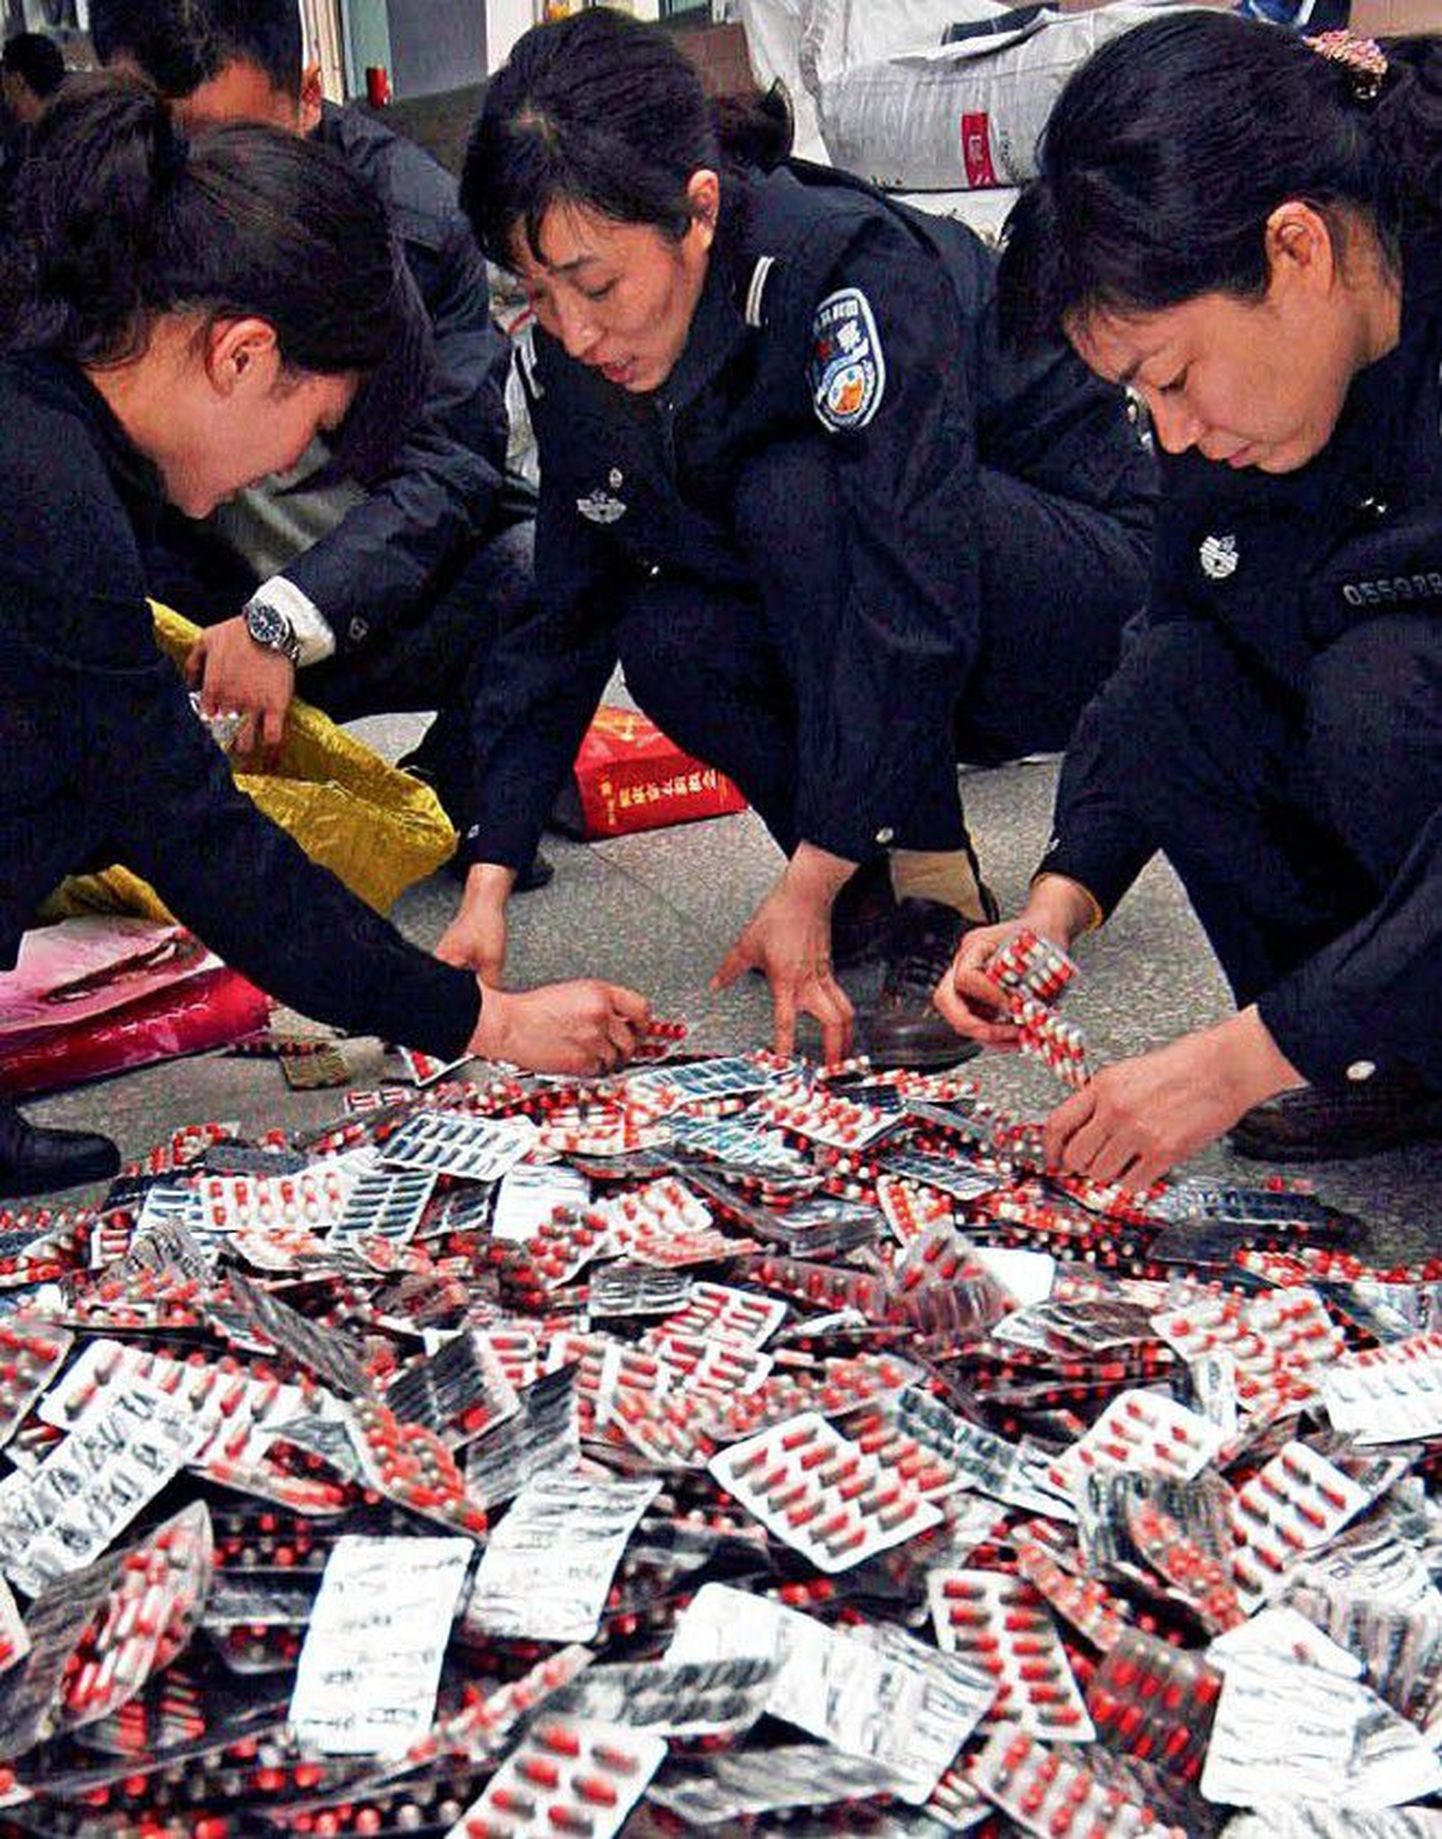 Hiina politseinikud sorteerivad konfiskeeritud libaravimeid.